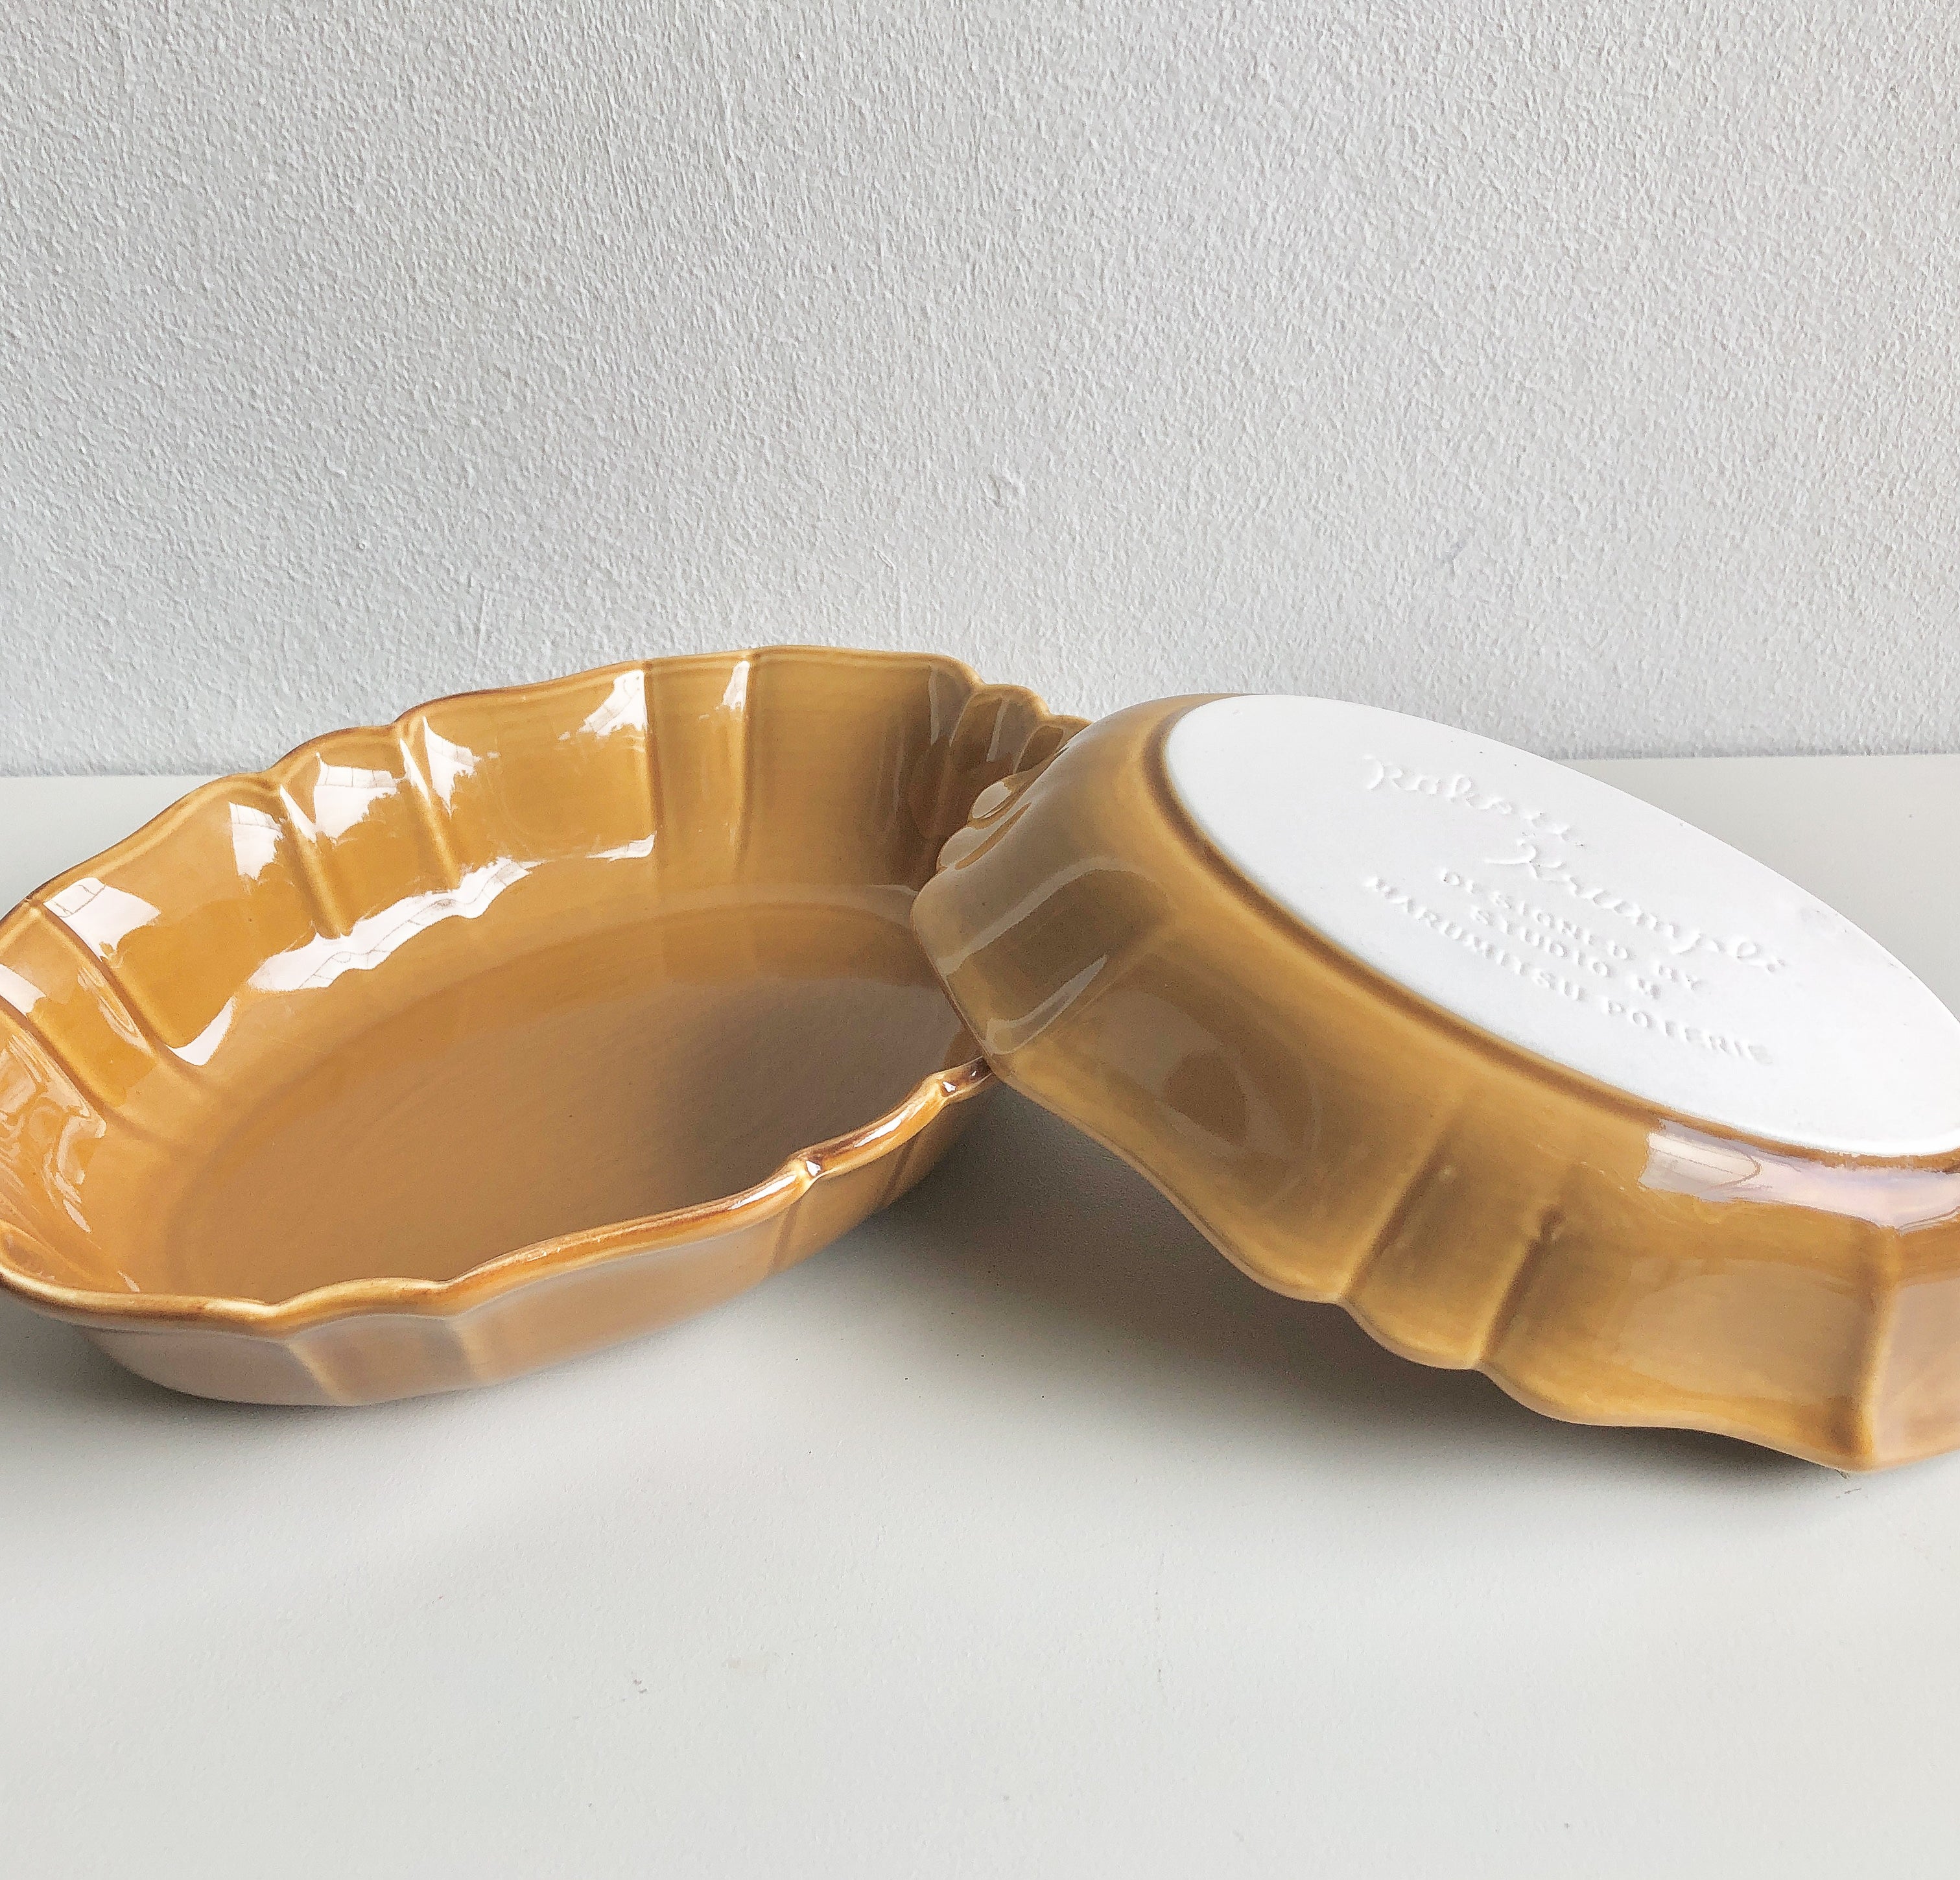 Ceramic Nesting Casserole Set by PROSE Tabletop